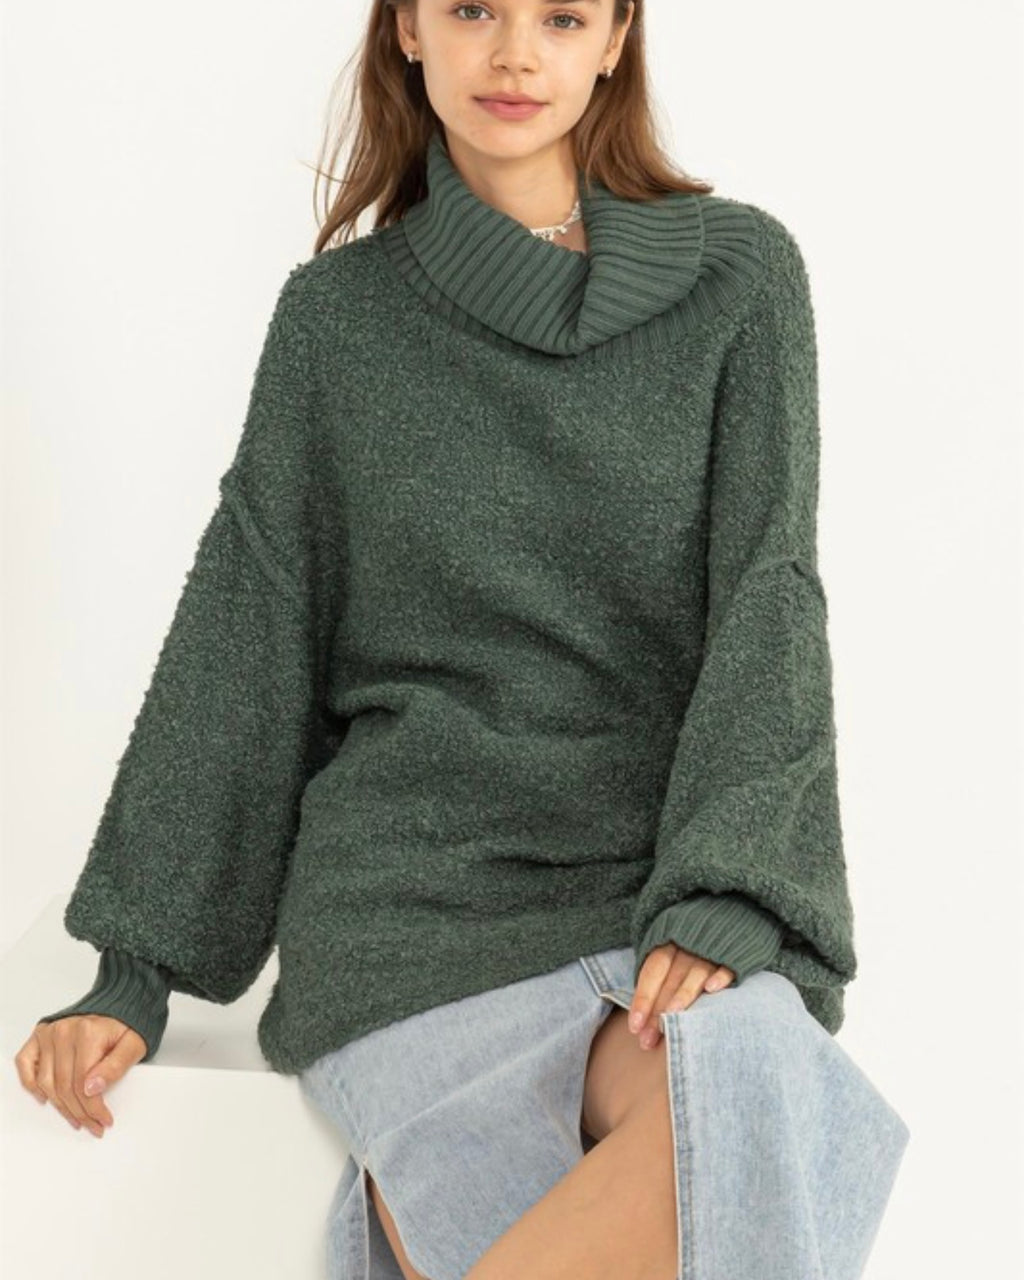 Cozy Oversized Sweater